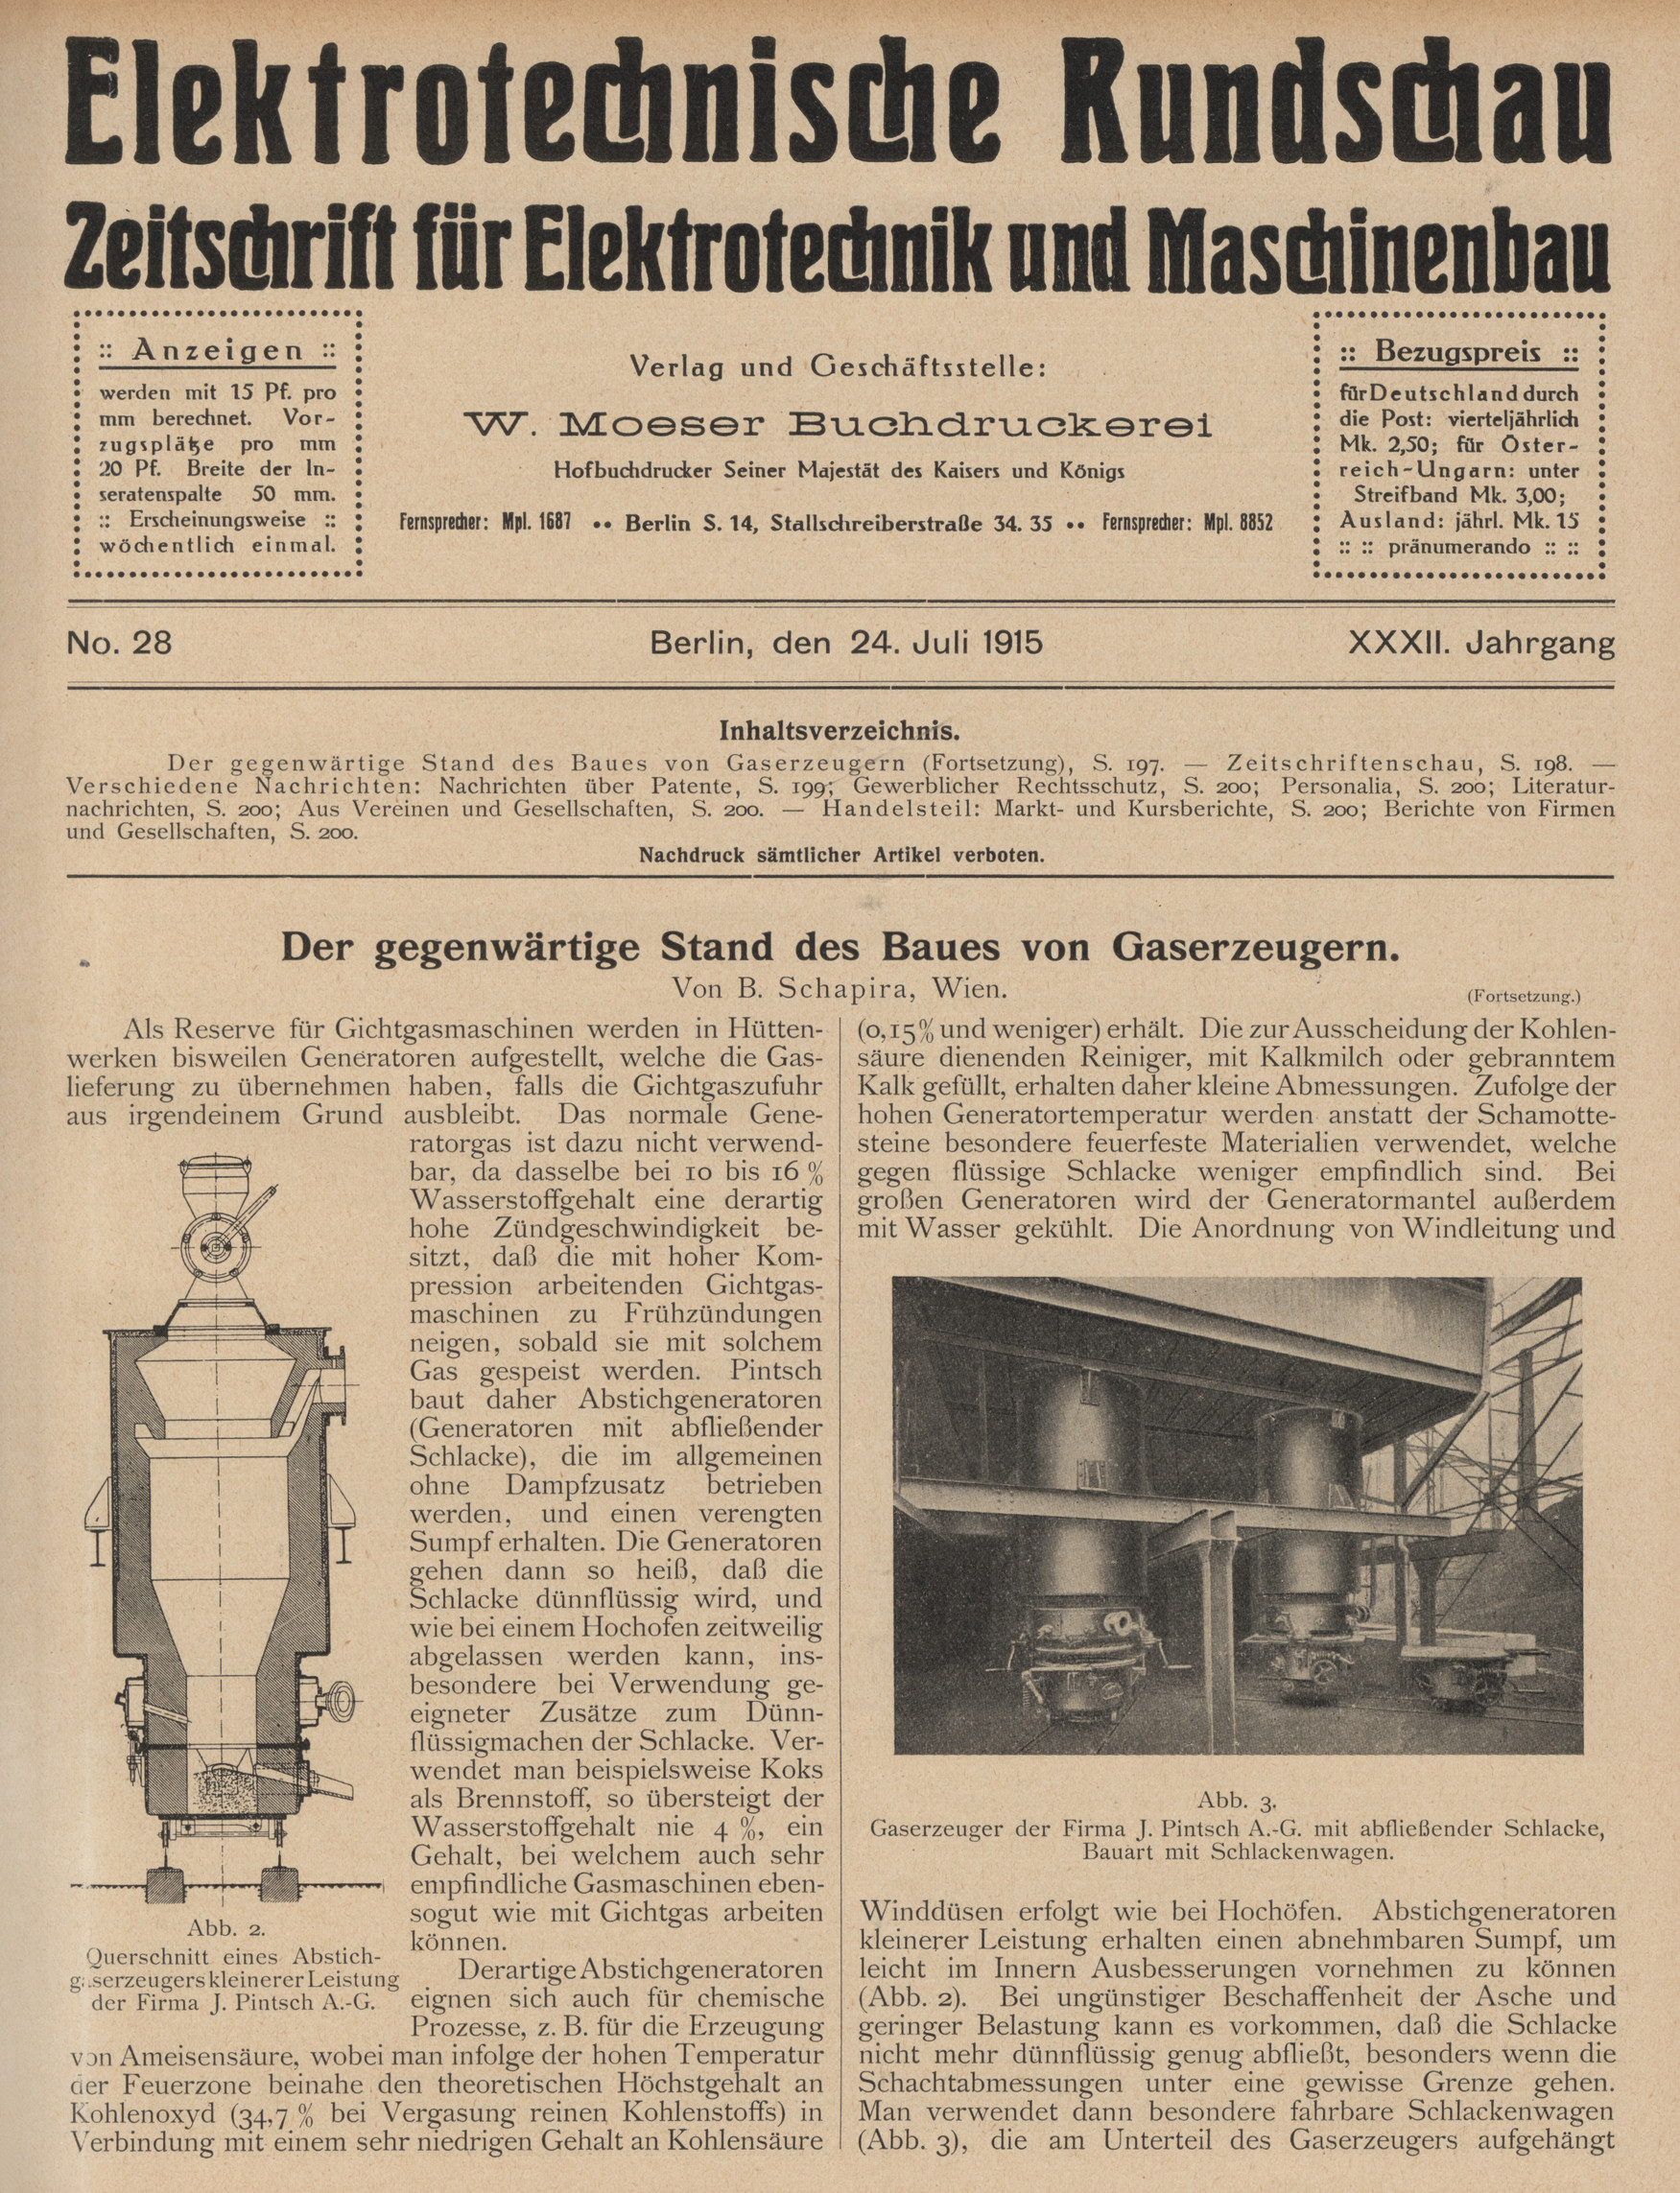 Elektrotechnische Rundschau : Zeitschrift für Elektrotechnik und Maschinenbau + Polytechnische Rundschau, No. 28, XXXII. Jahrgang